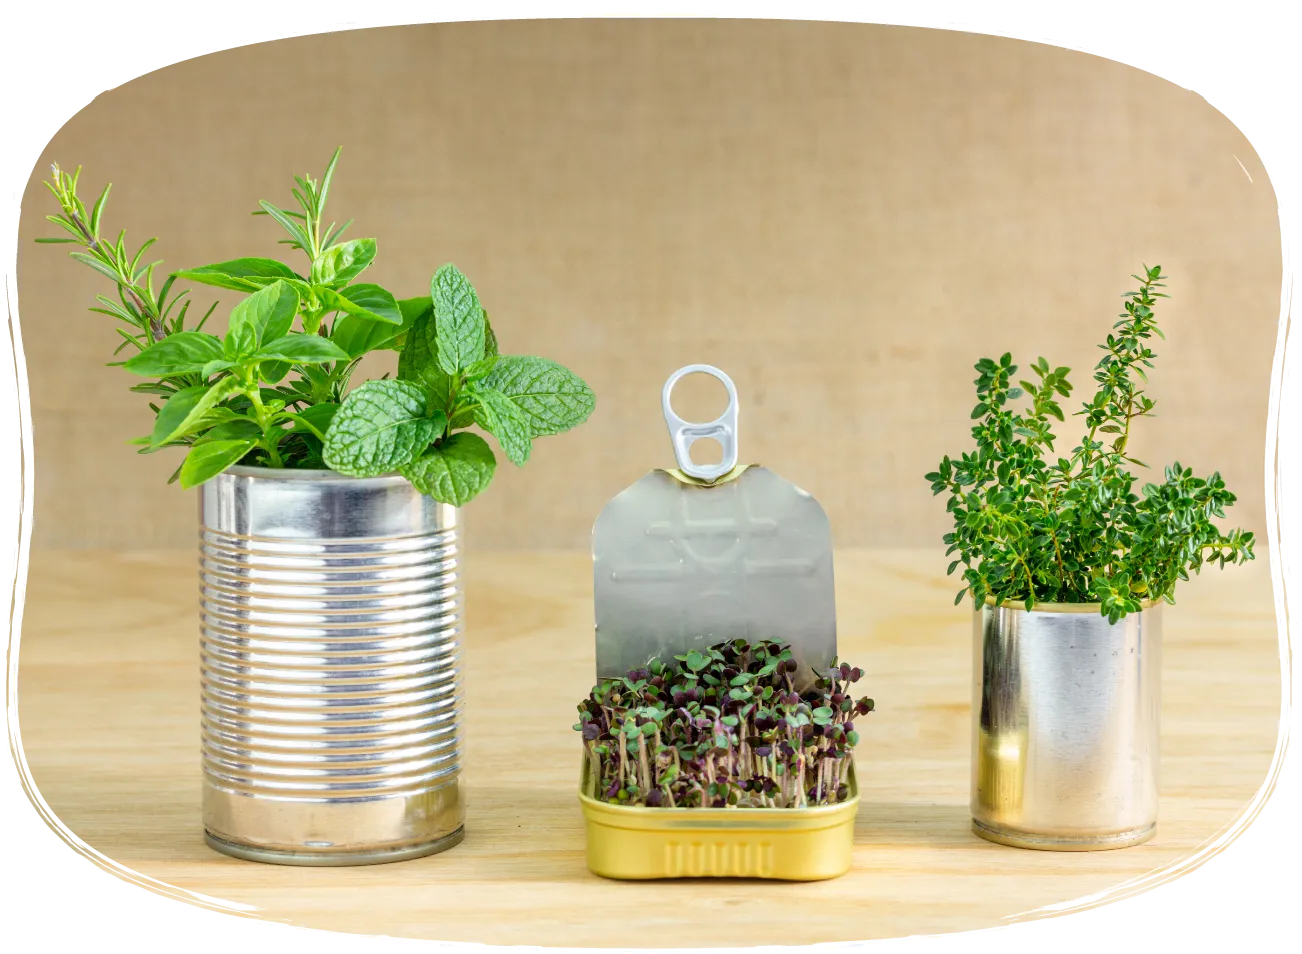 Trois contenants réutilisés servant de pots de plantes.